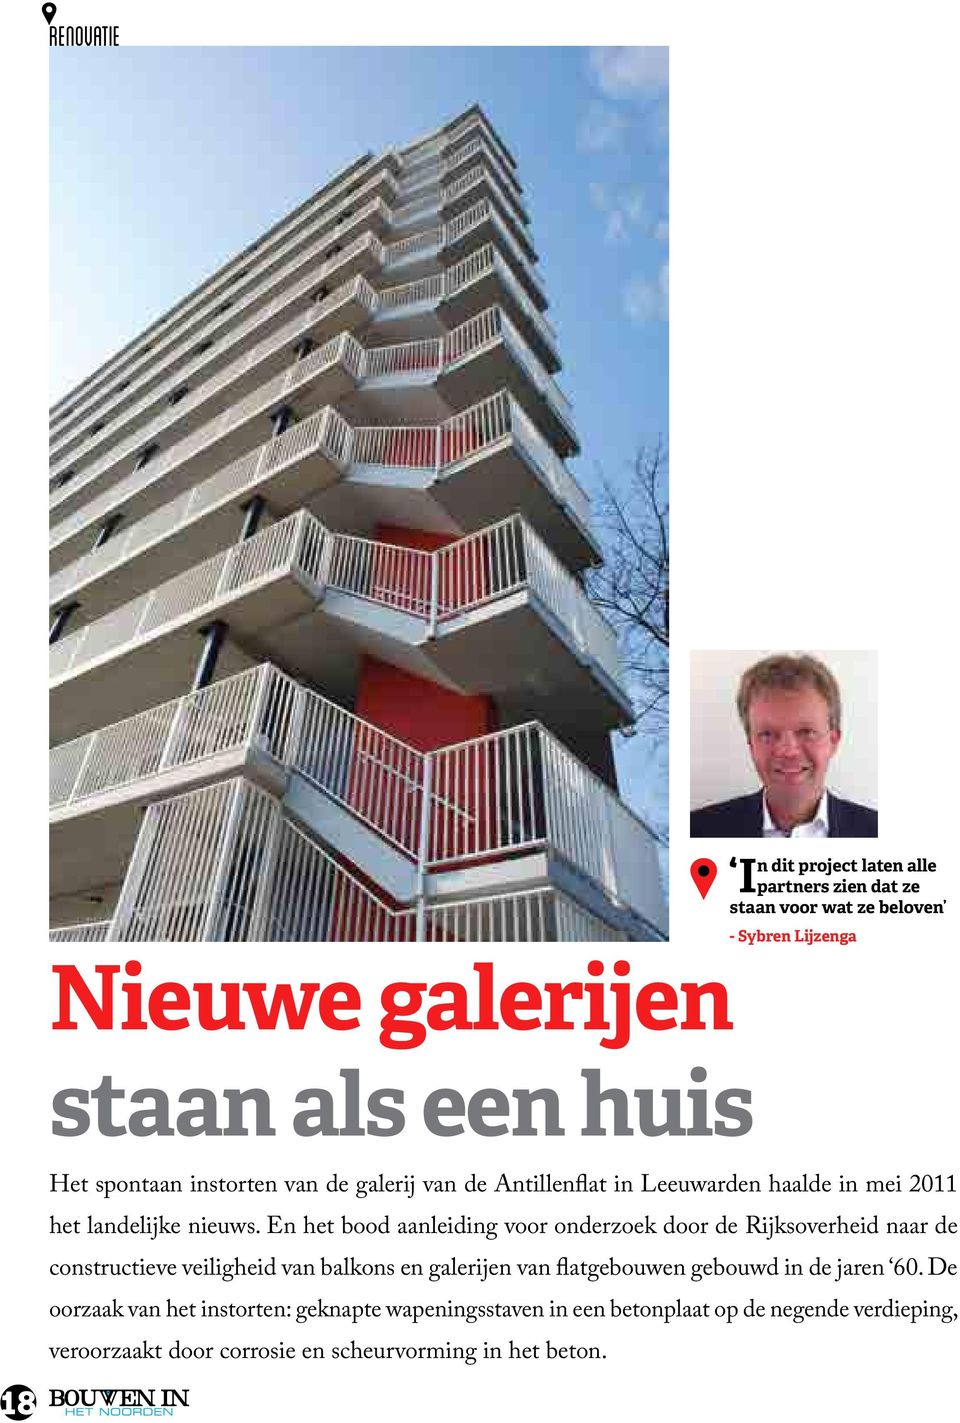 En het bood aanleiding voor onderzoek door de Rijksoverheid naar de constructieve veiligheid van balkons en galerijen van flatgebouwen